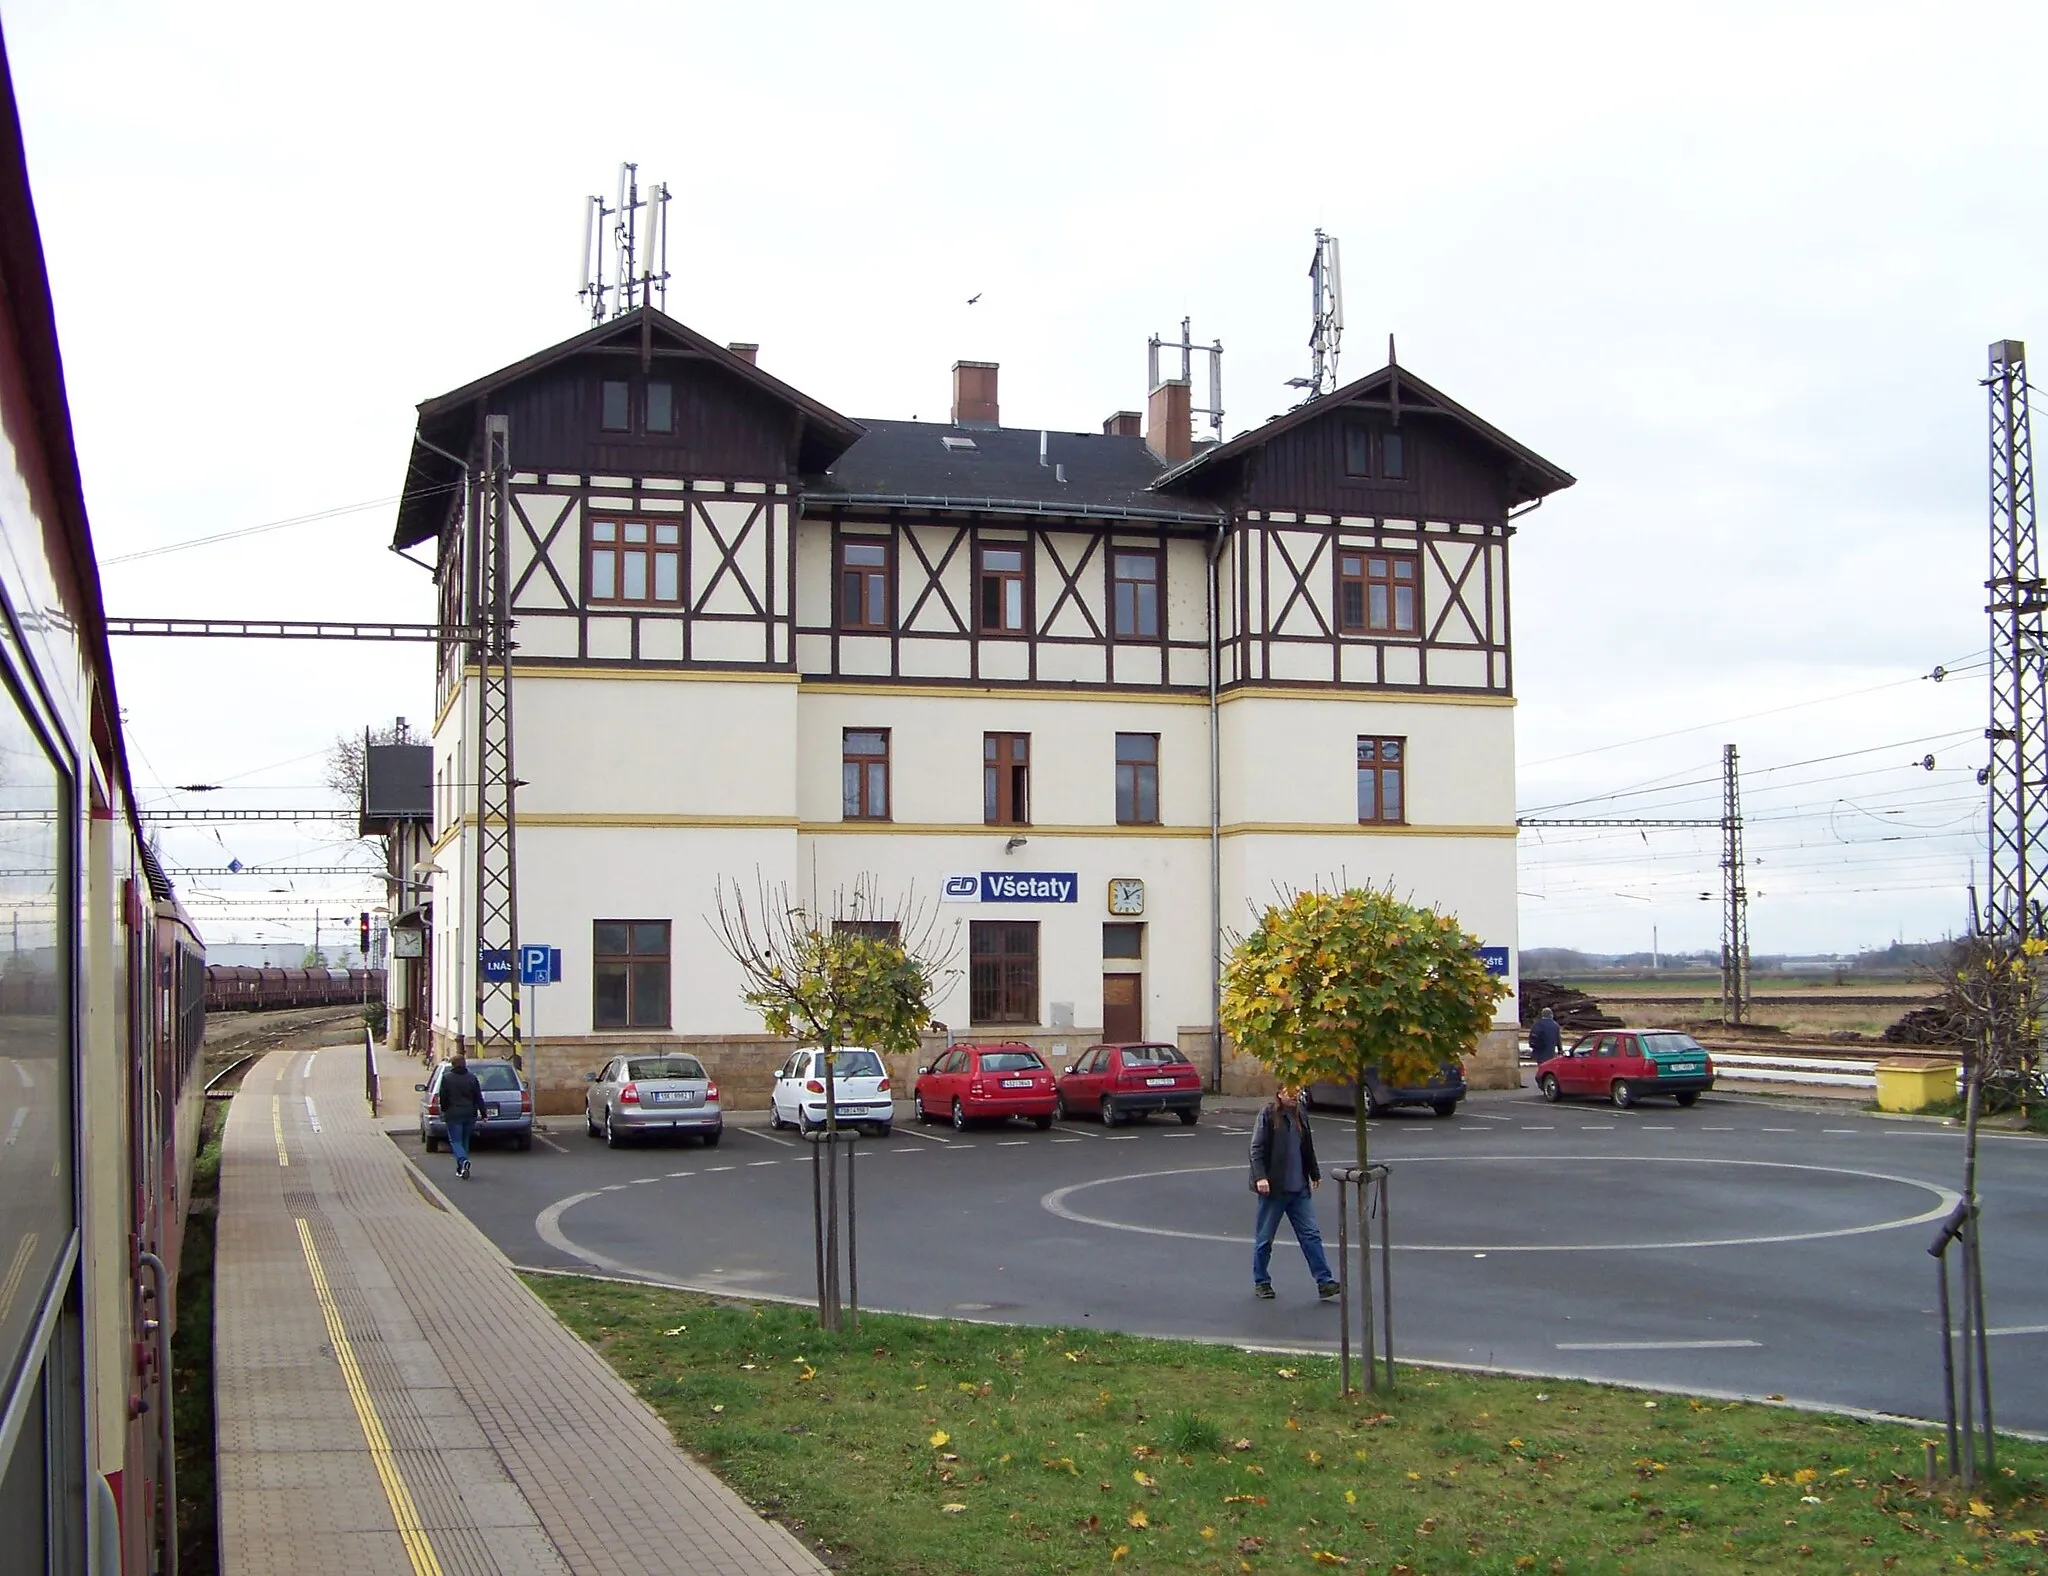 Photo showing: Všetaty, Mělník District, Central Bohemian Region, Czech Republic. Train station Všetaty.